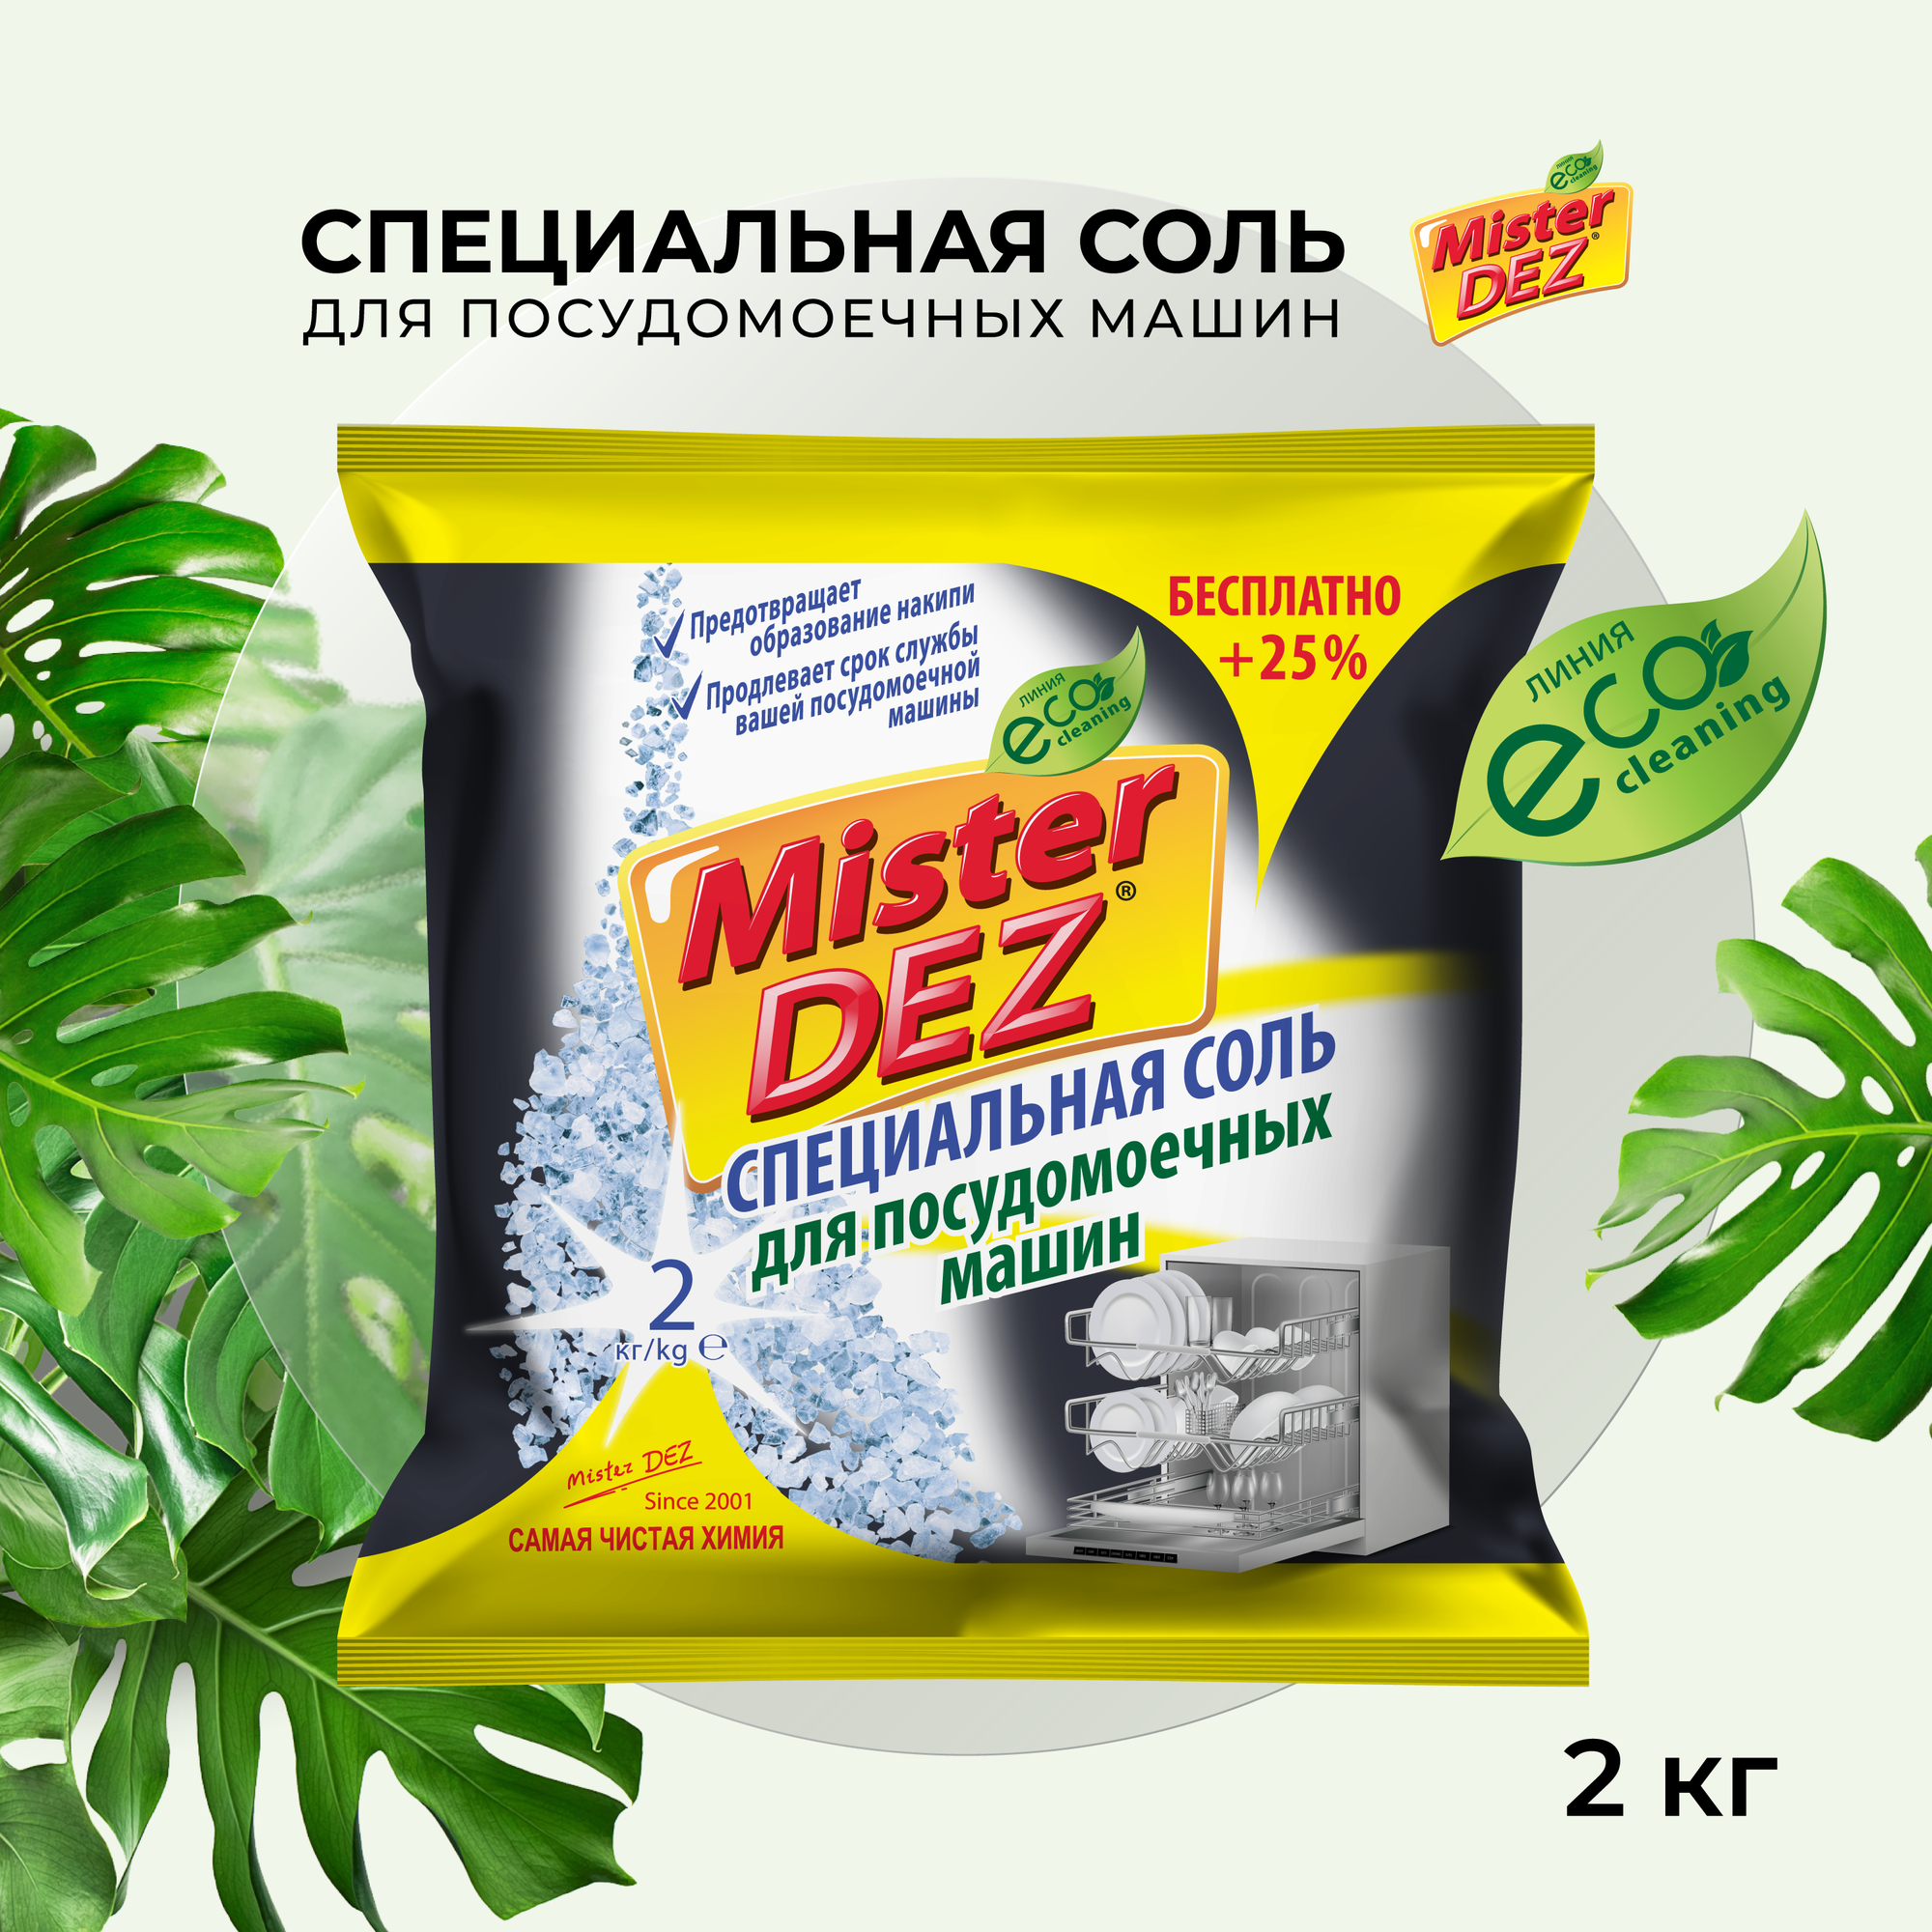 Mister Dez соль для посудомоечных машин Специальная, 2 кг